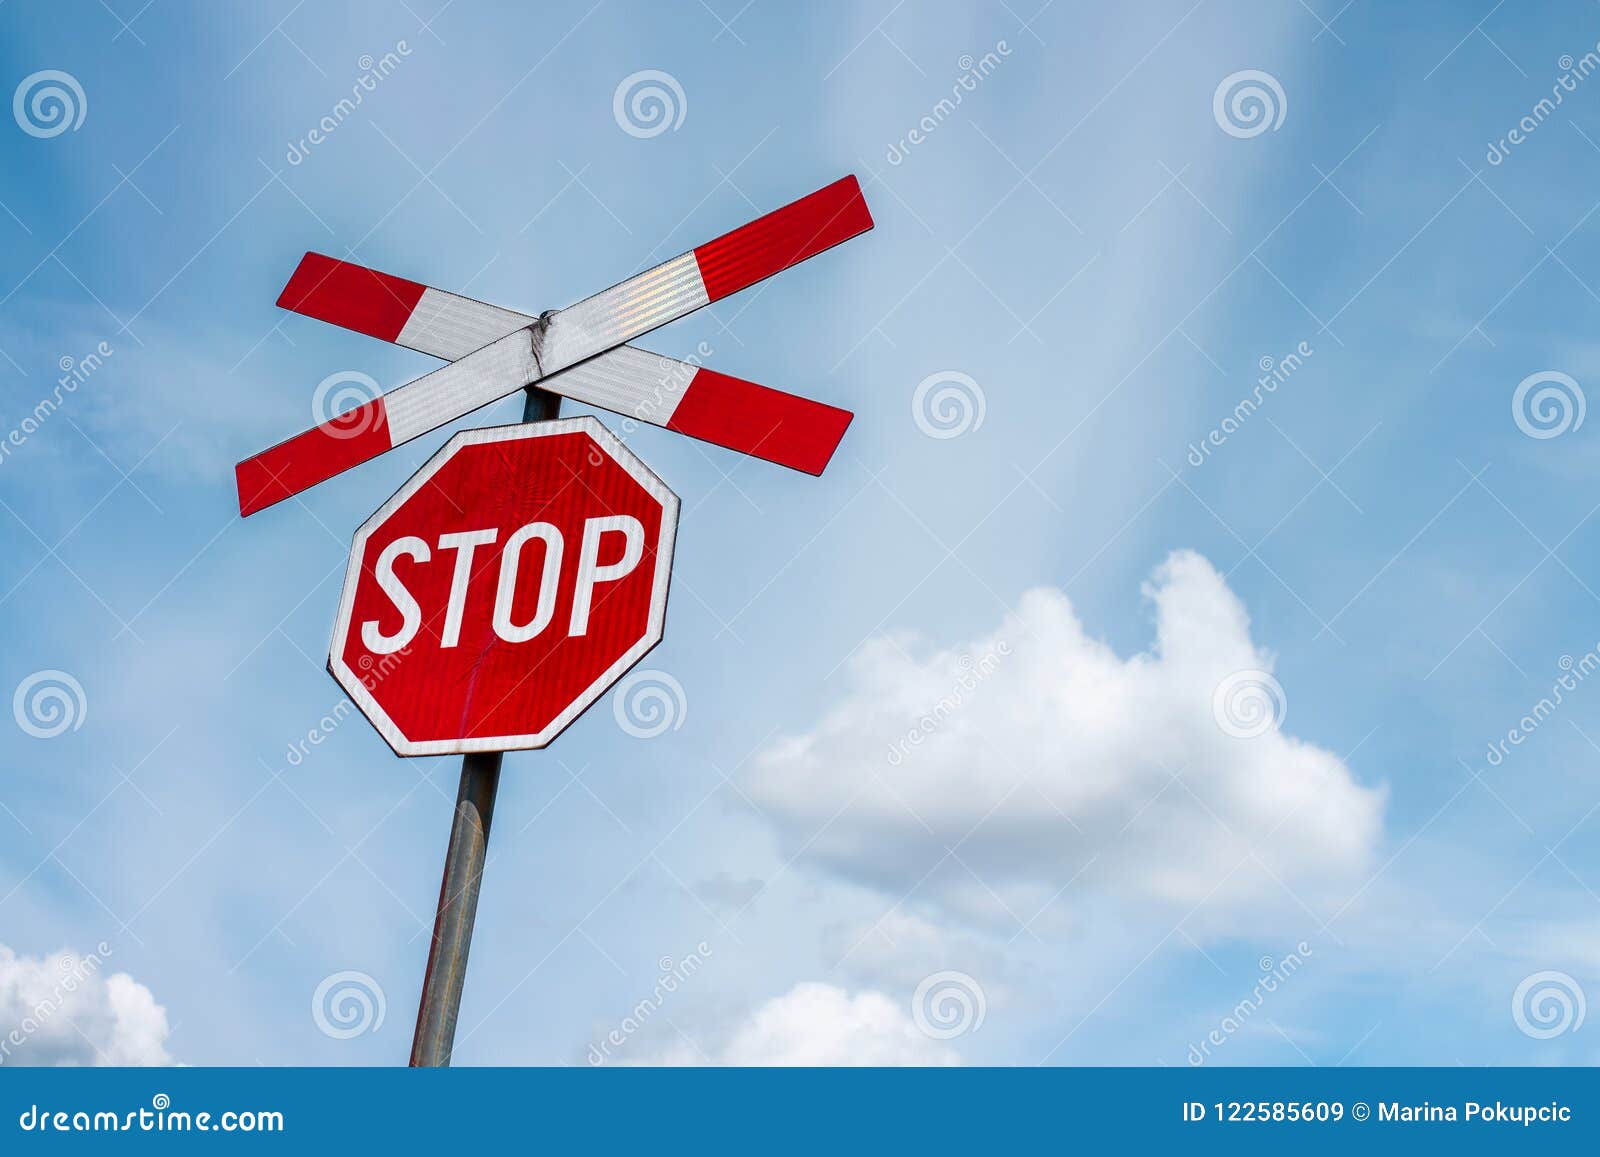 Biển Stop lưu thông luôn là một biển báo quan trọng giúp tăng tính an toàn cho mọi người tham gia giao thông. Hãy nhấp vào hình ảnh để tìm hiểu những điều bạn cần biết về biển Stop và cách áp dụng chúng khi lái xe.